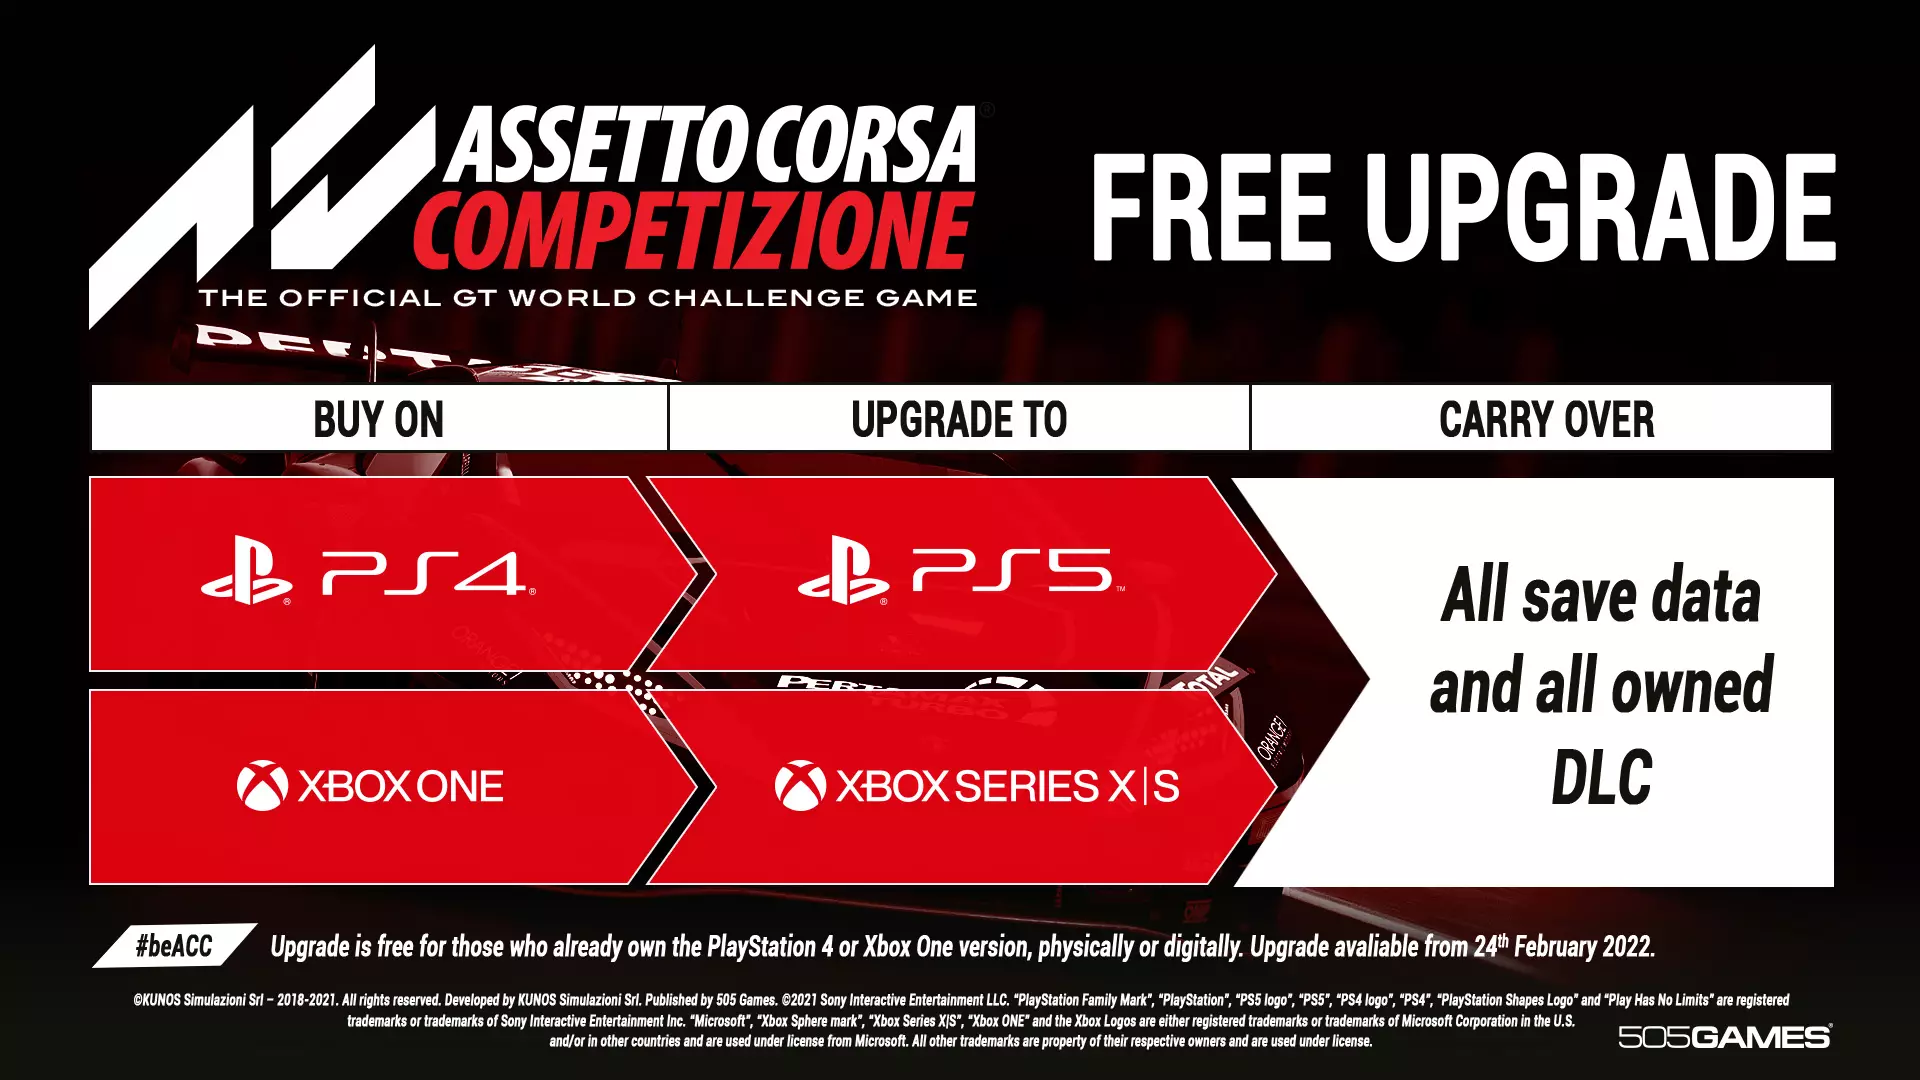 Assetto Corsa Competizione1 ಹೊಸ ಕನ್ಸೋಲ್ಗಳನ್ನು ಅಪ್ಗ್ರೇಡ್ ಮಾಡುತ್ತದೆ